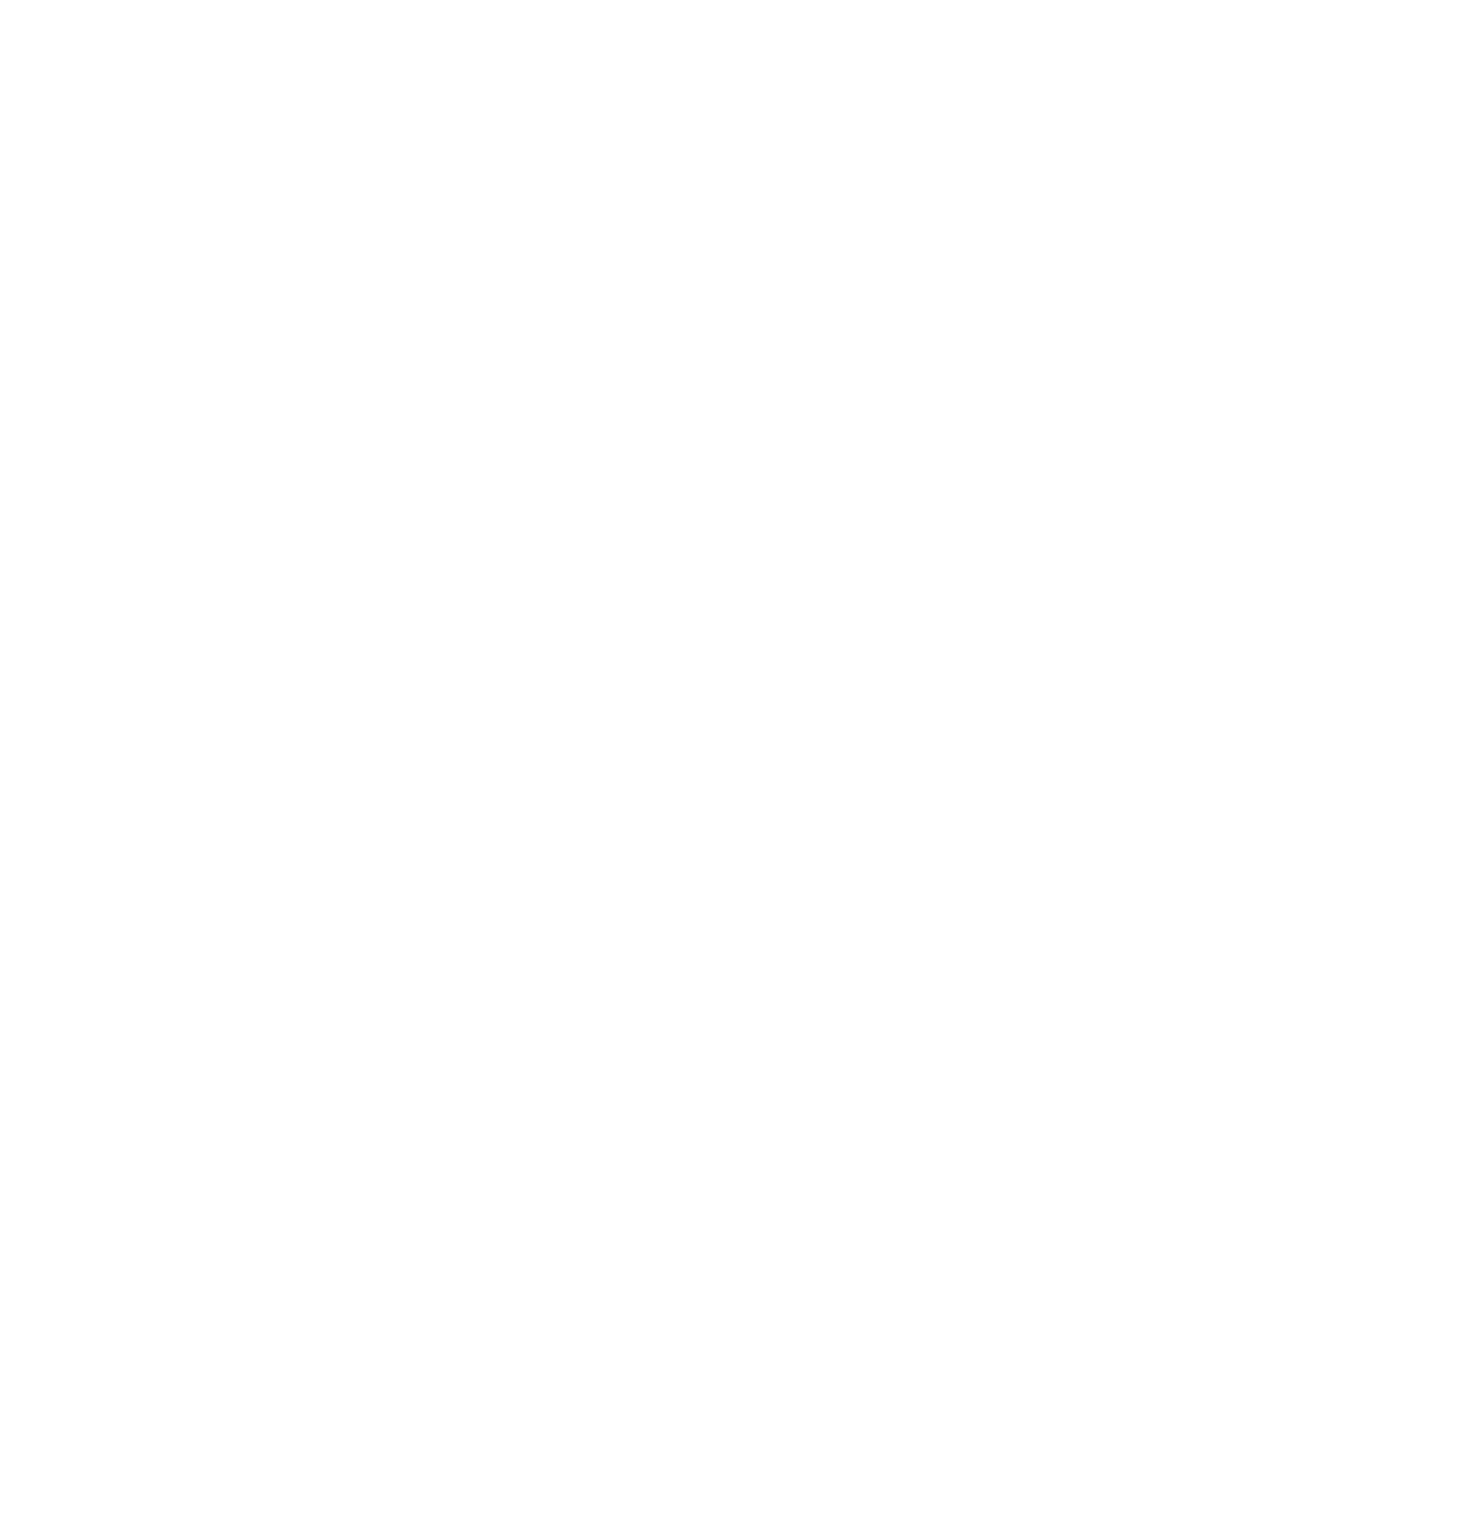 Vanguard logo for dark backgrounds (transparent PNG)